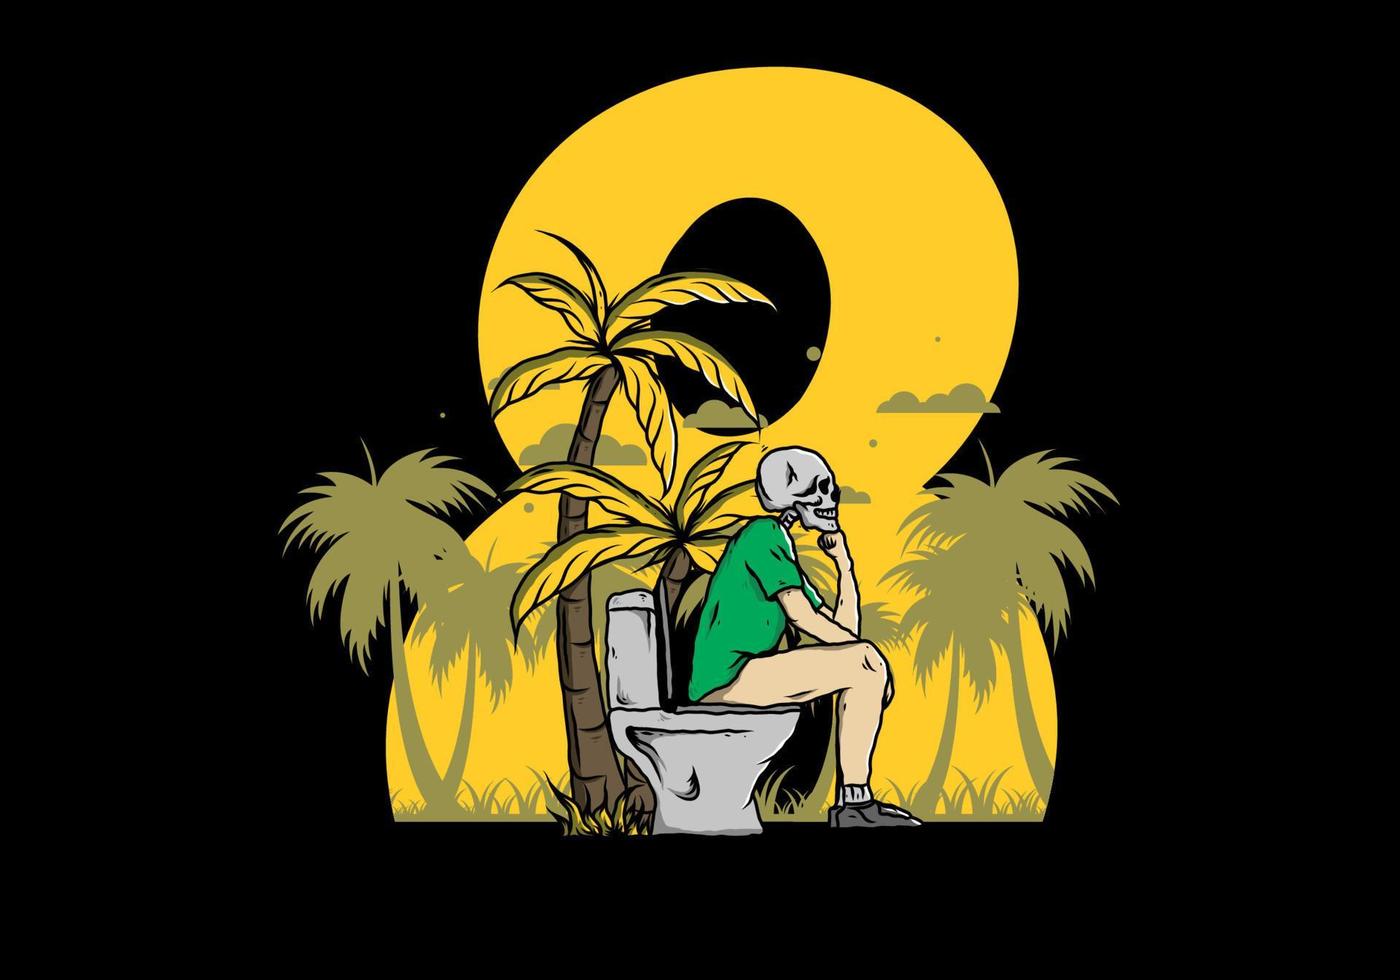 homem esqueleto sente-se na ilustração de banheiro ao ar livre vetor